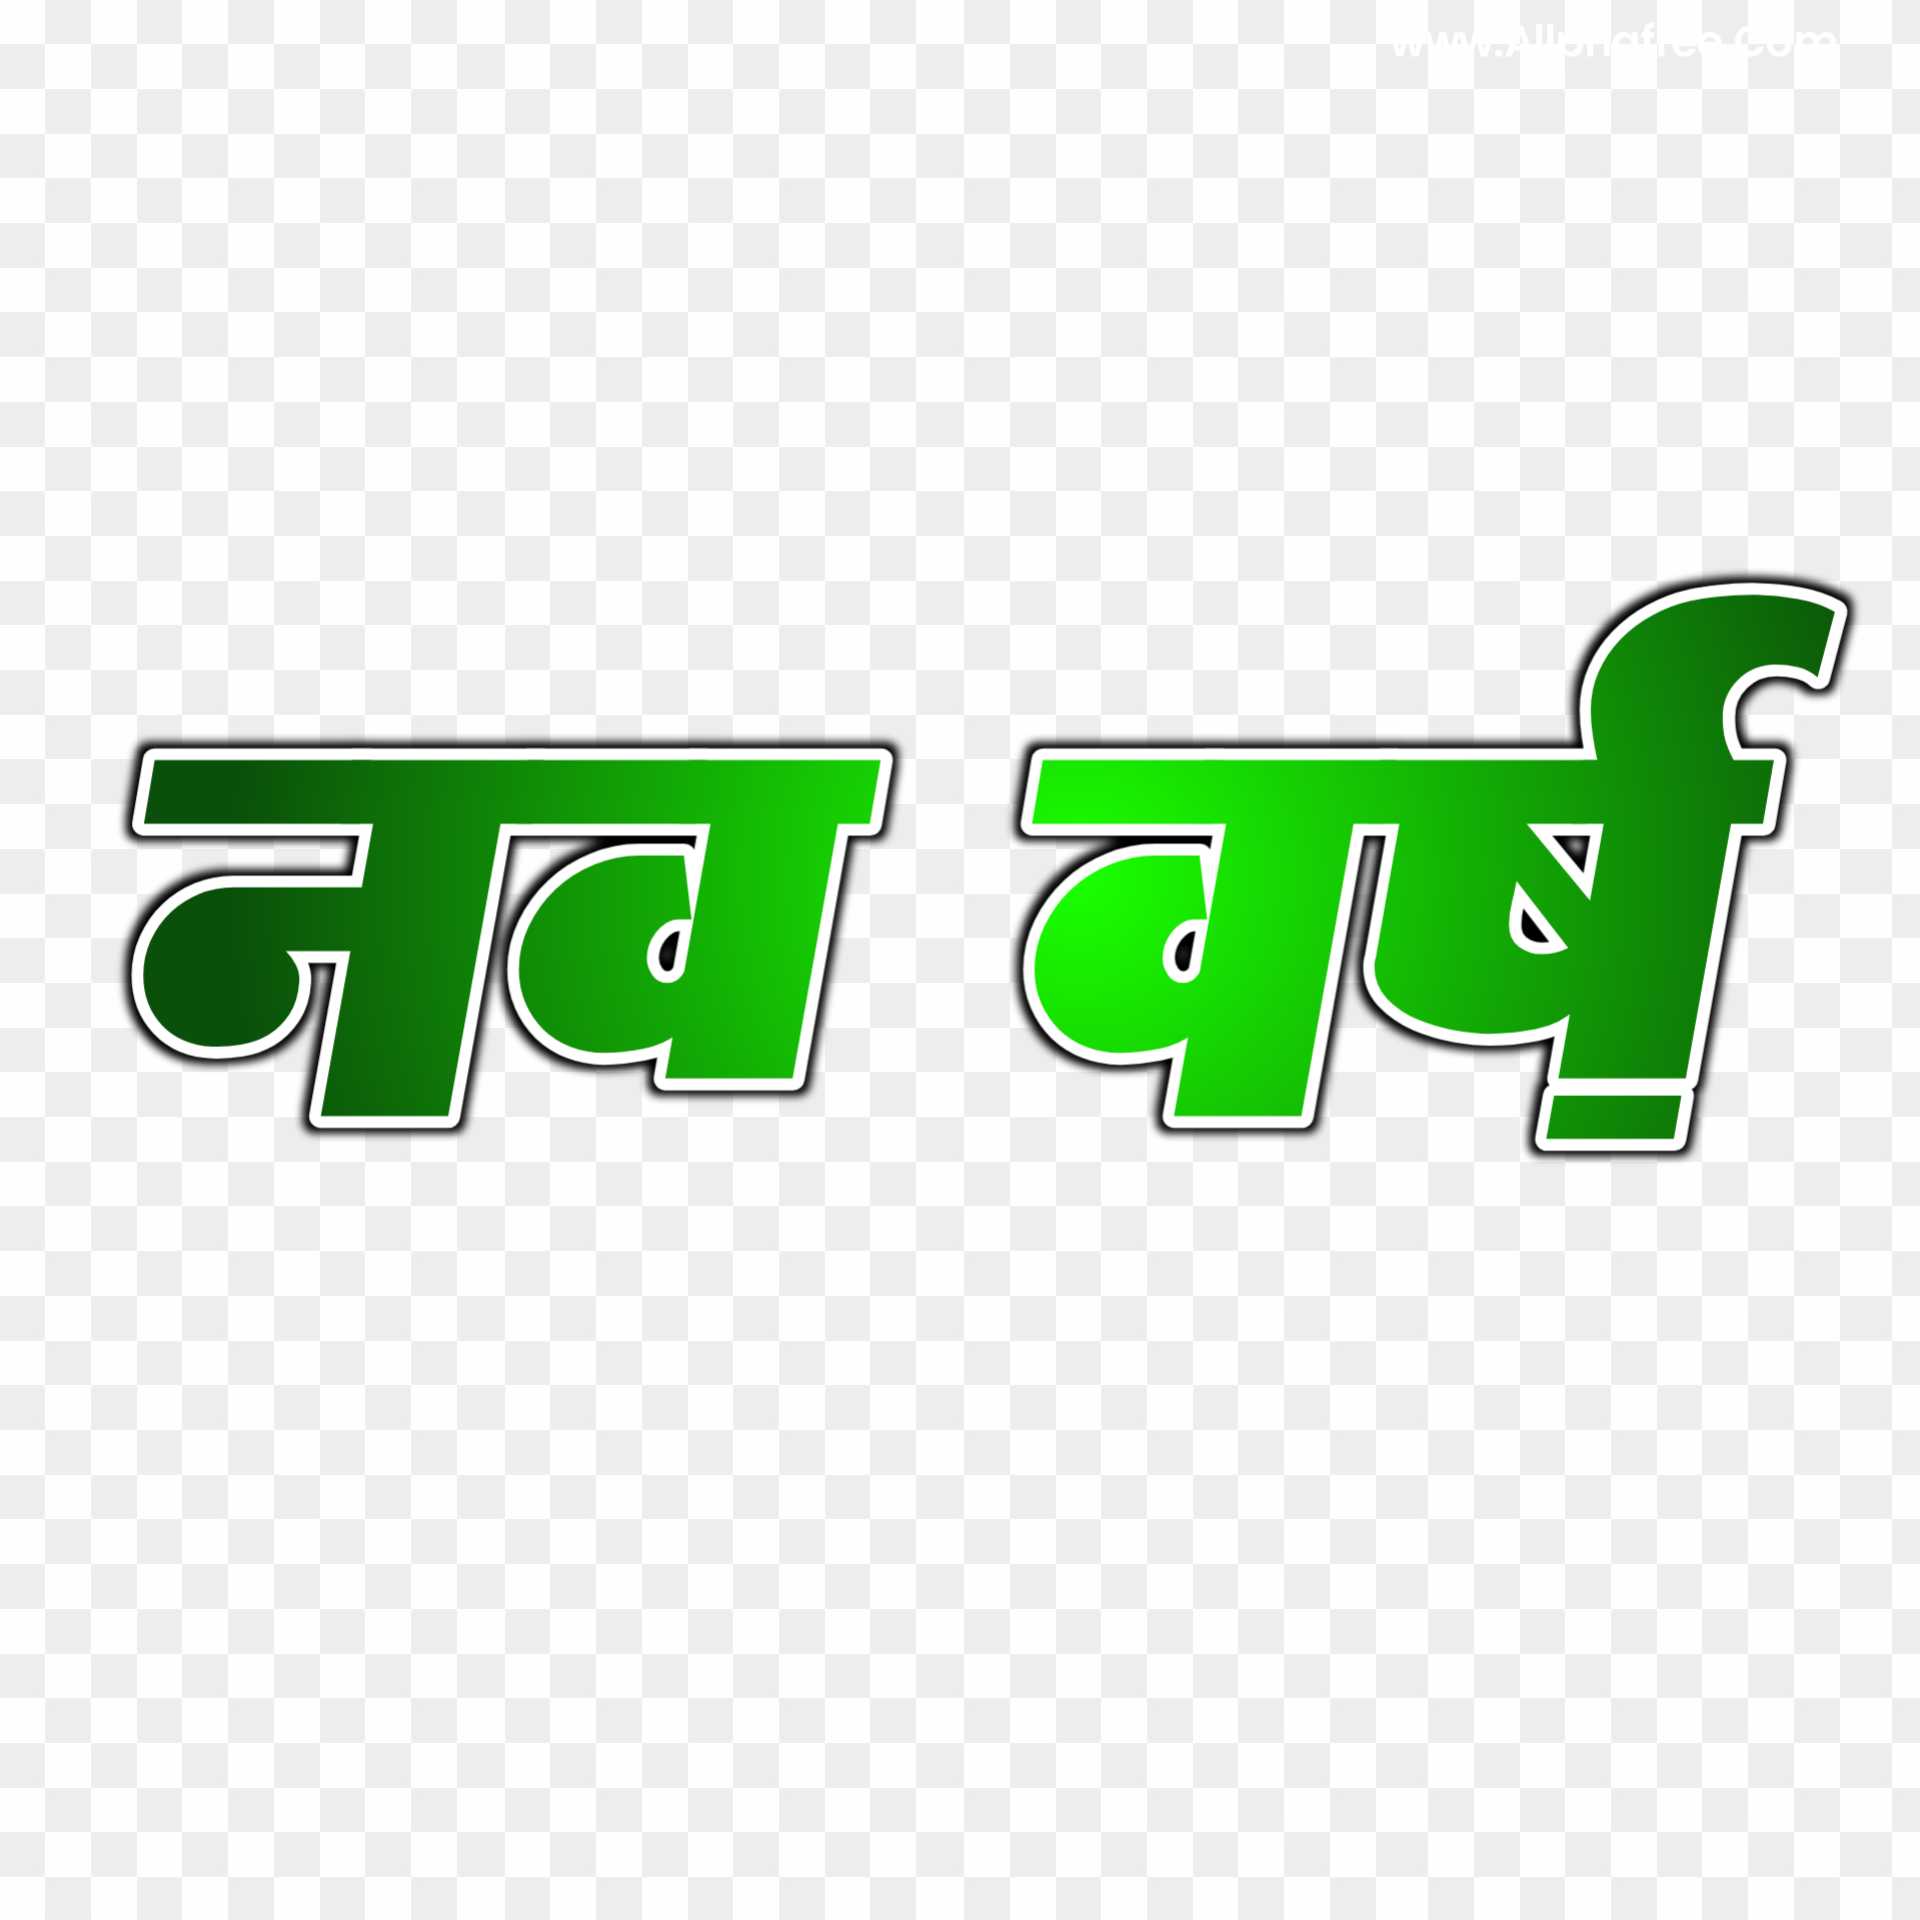 Nav varsh Hindi text PNG images download